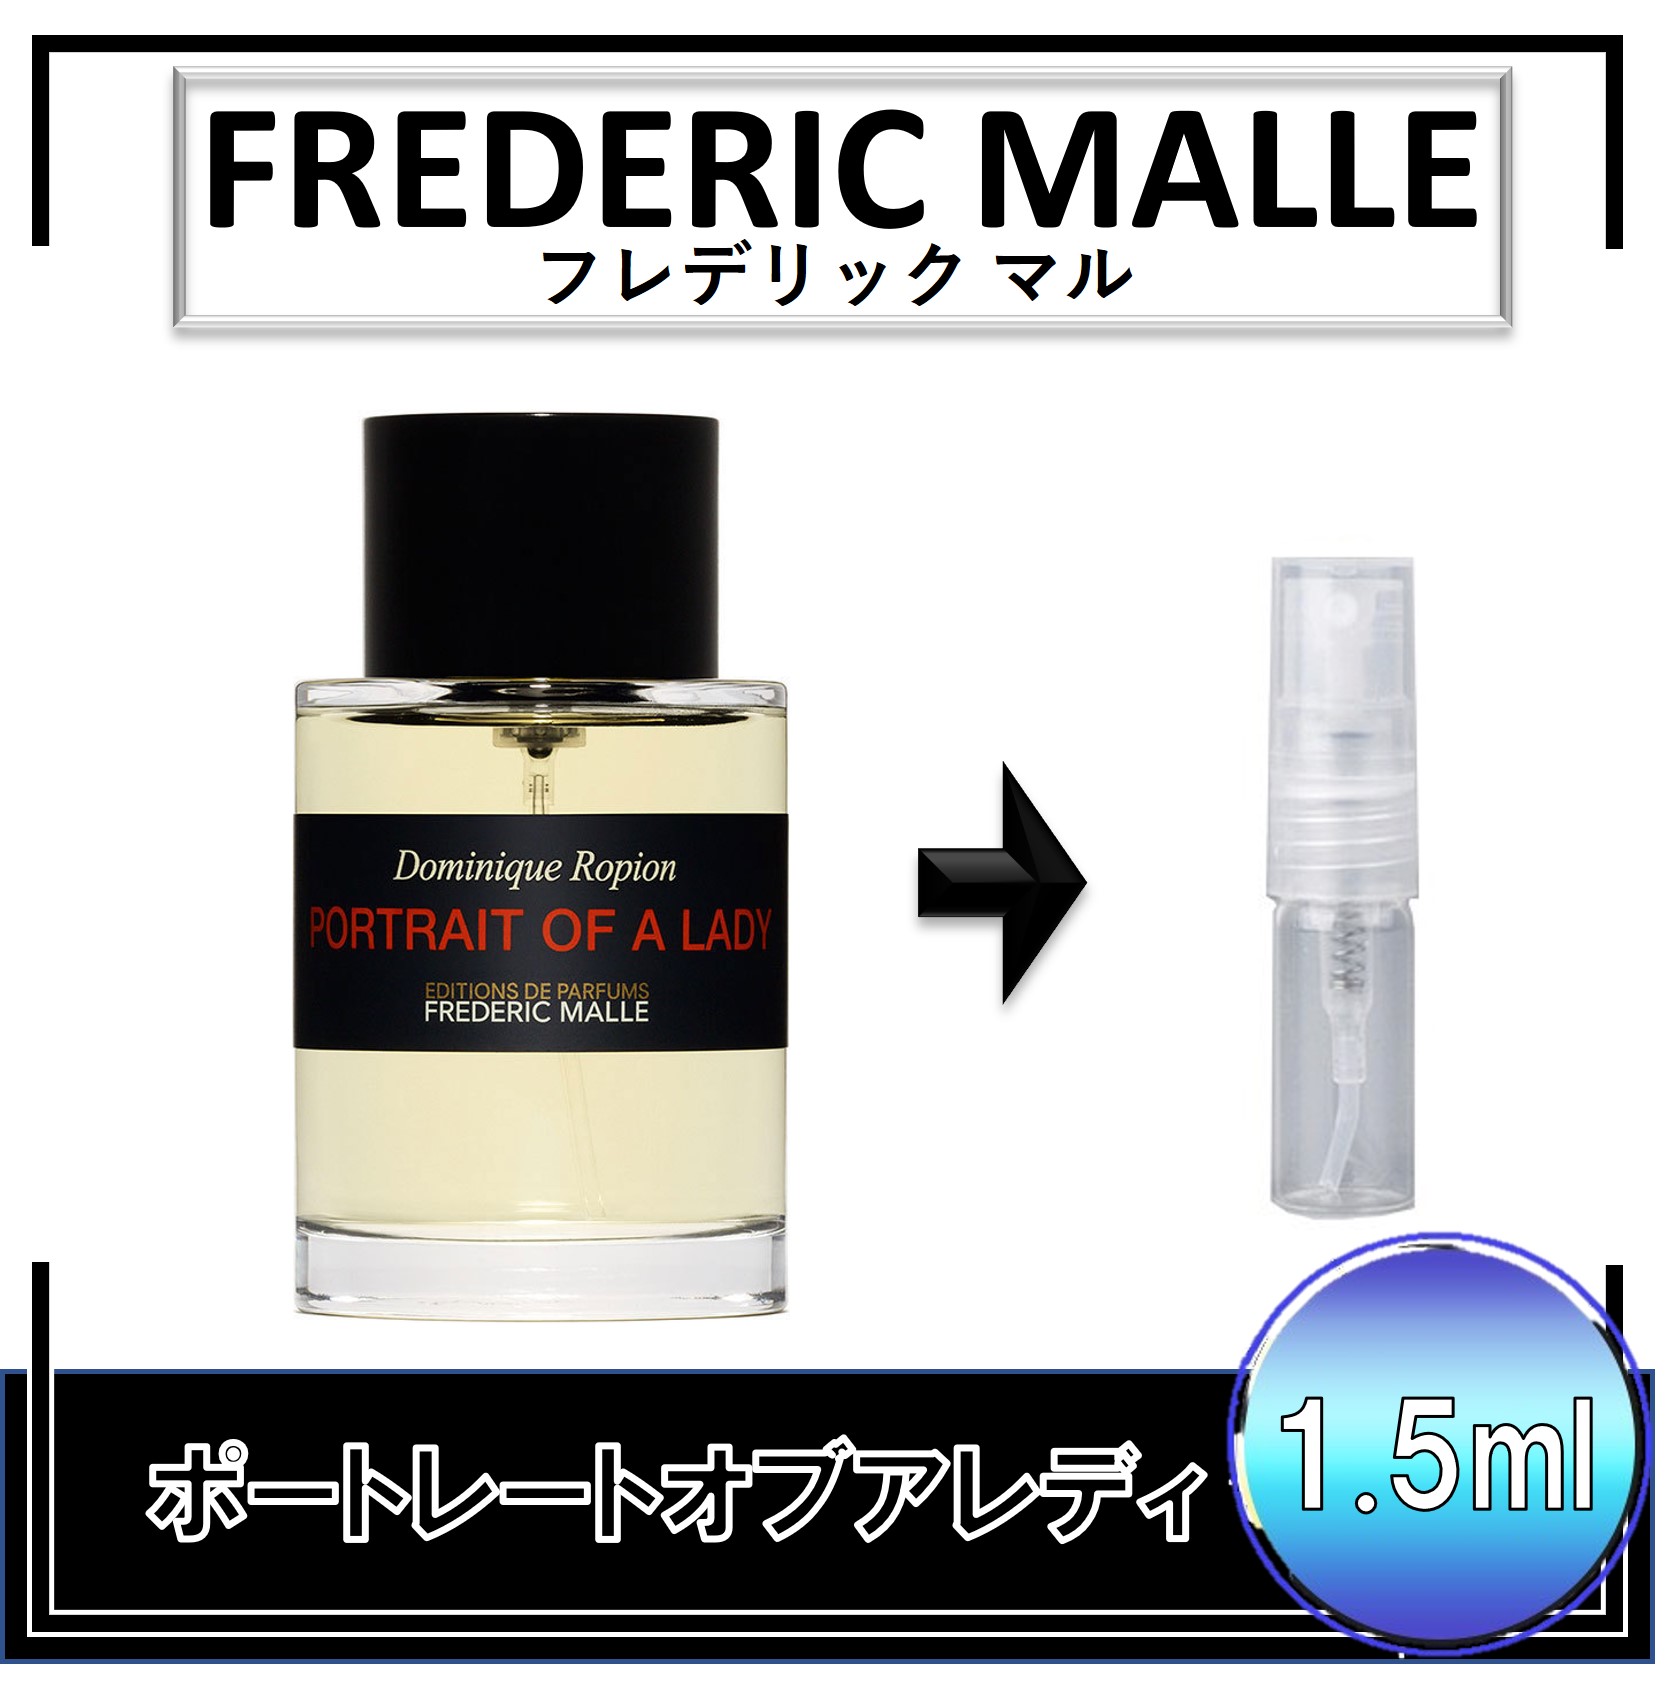 FREDERIC MALLE フレデリックマル コロンインデレビル 香水 ☆ - 香水